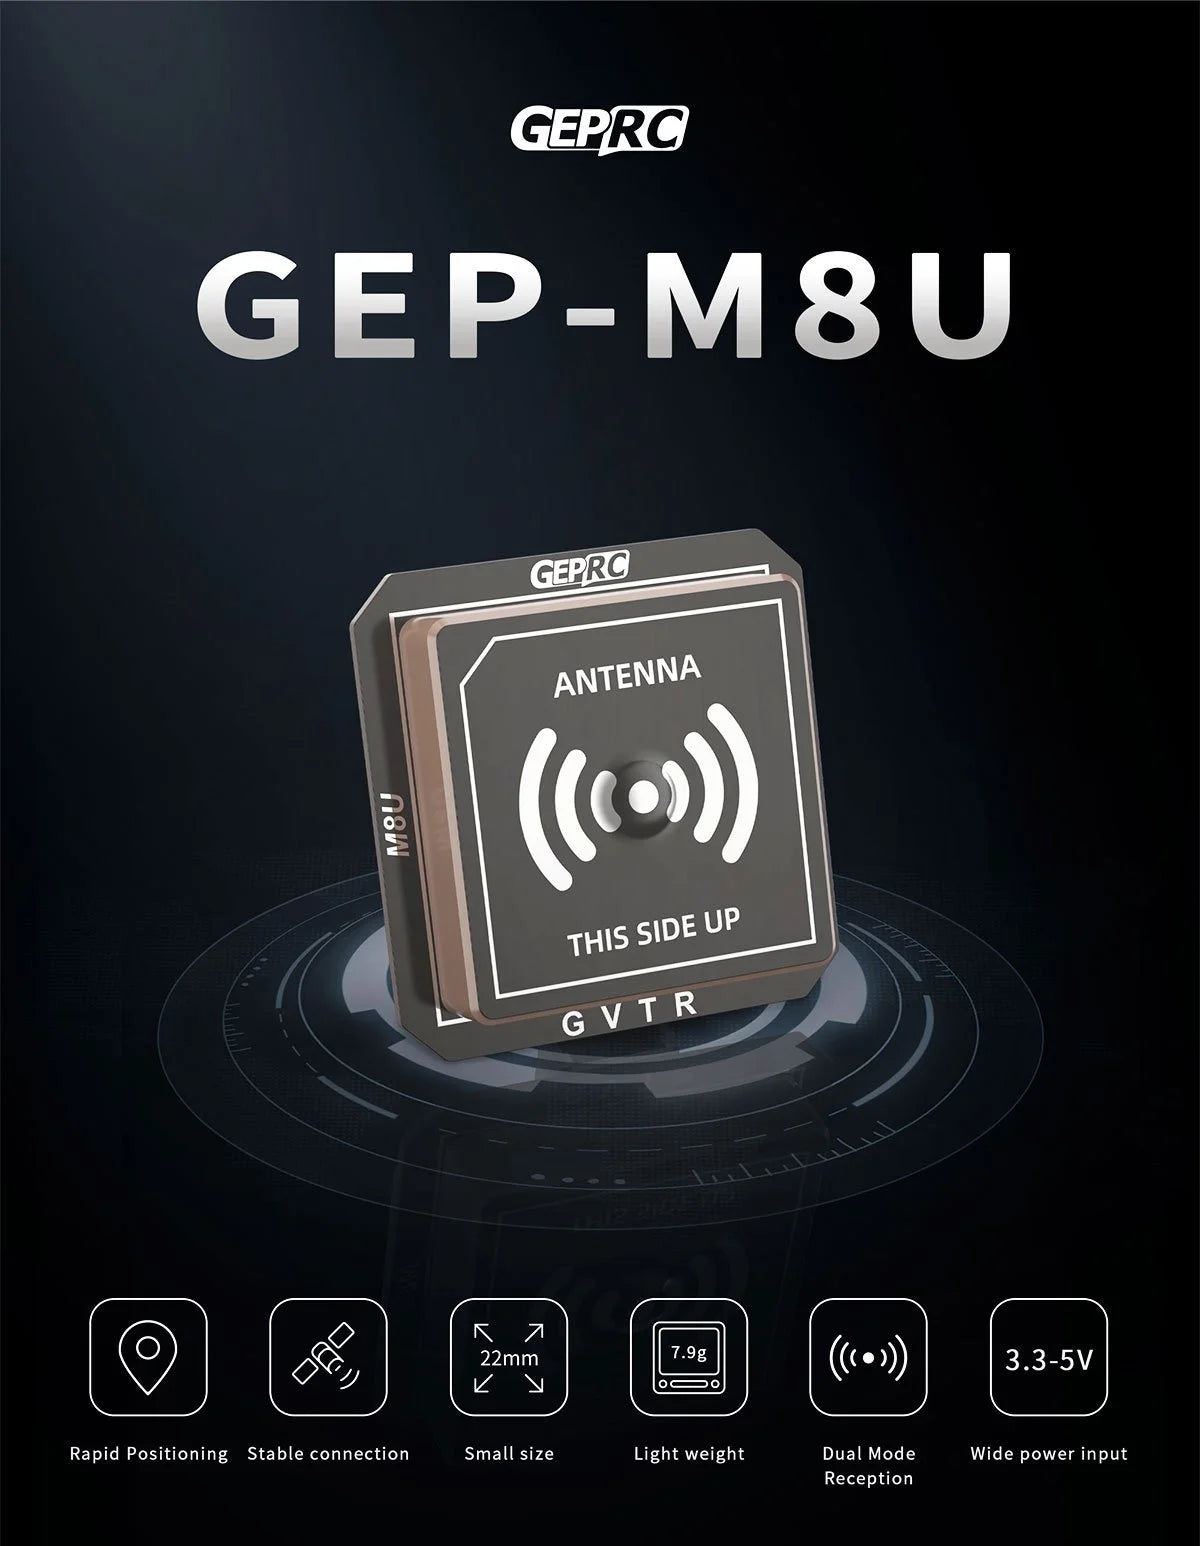 GEPRC GEP-M8U GPS, GEPRC GEP-M8U